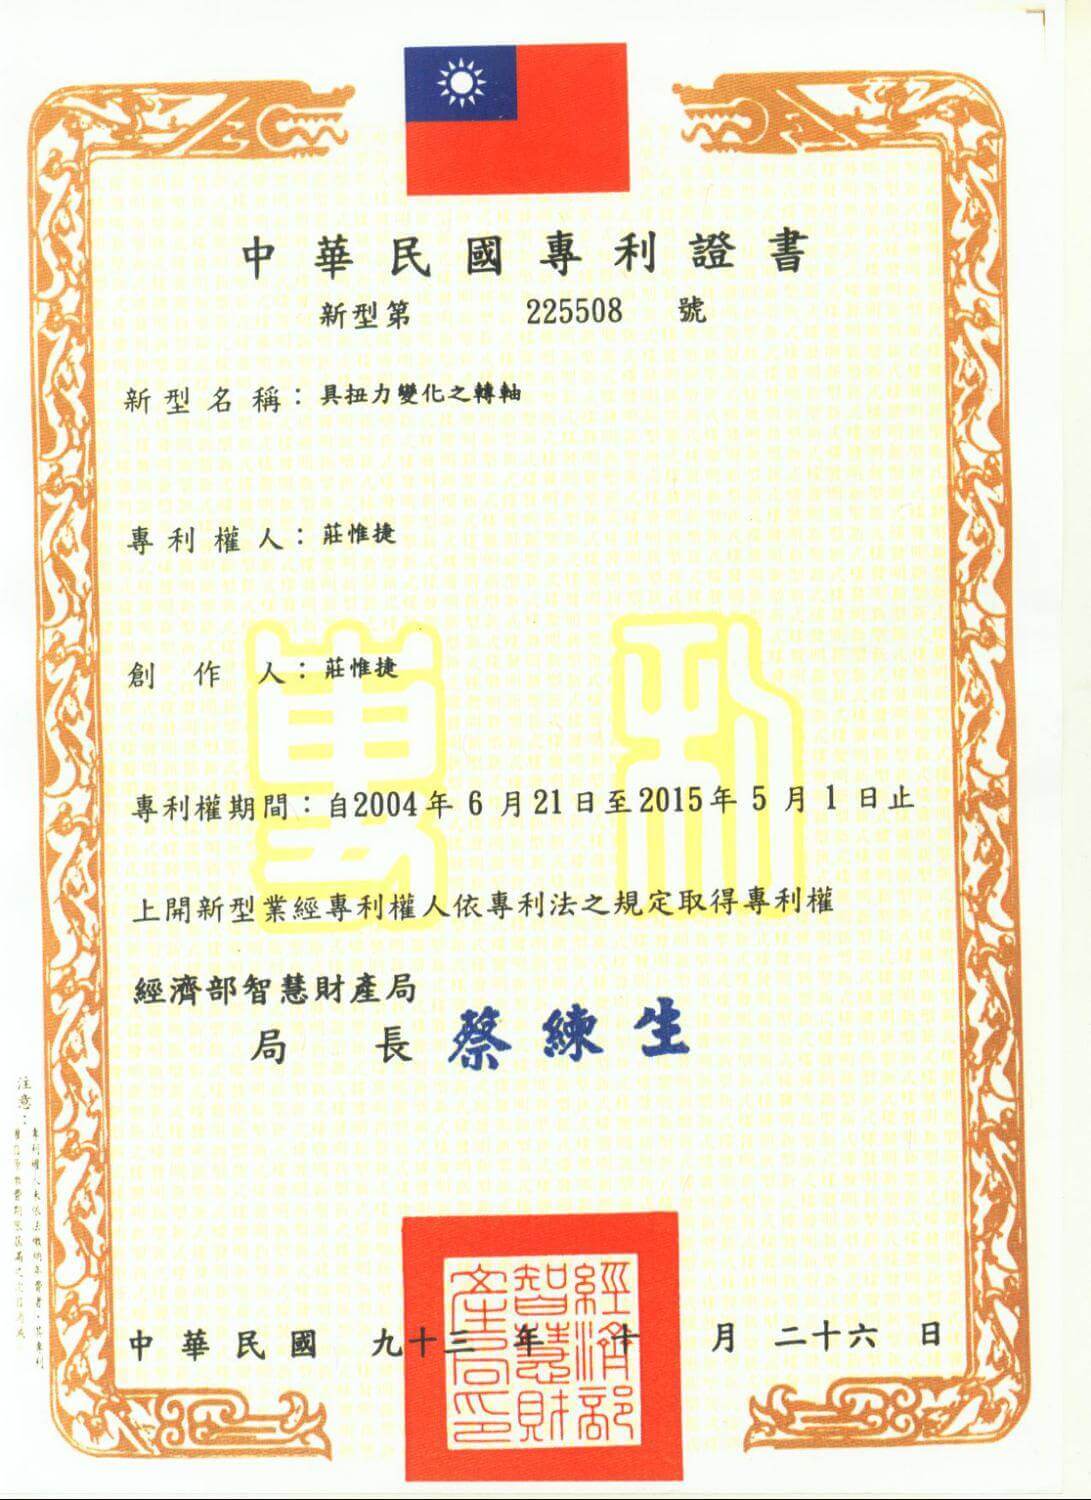 Chienfu-Tec CNC patents in Taiwan-23